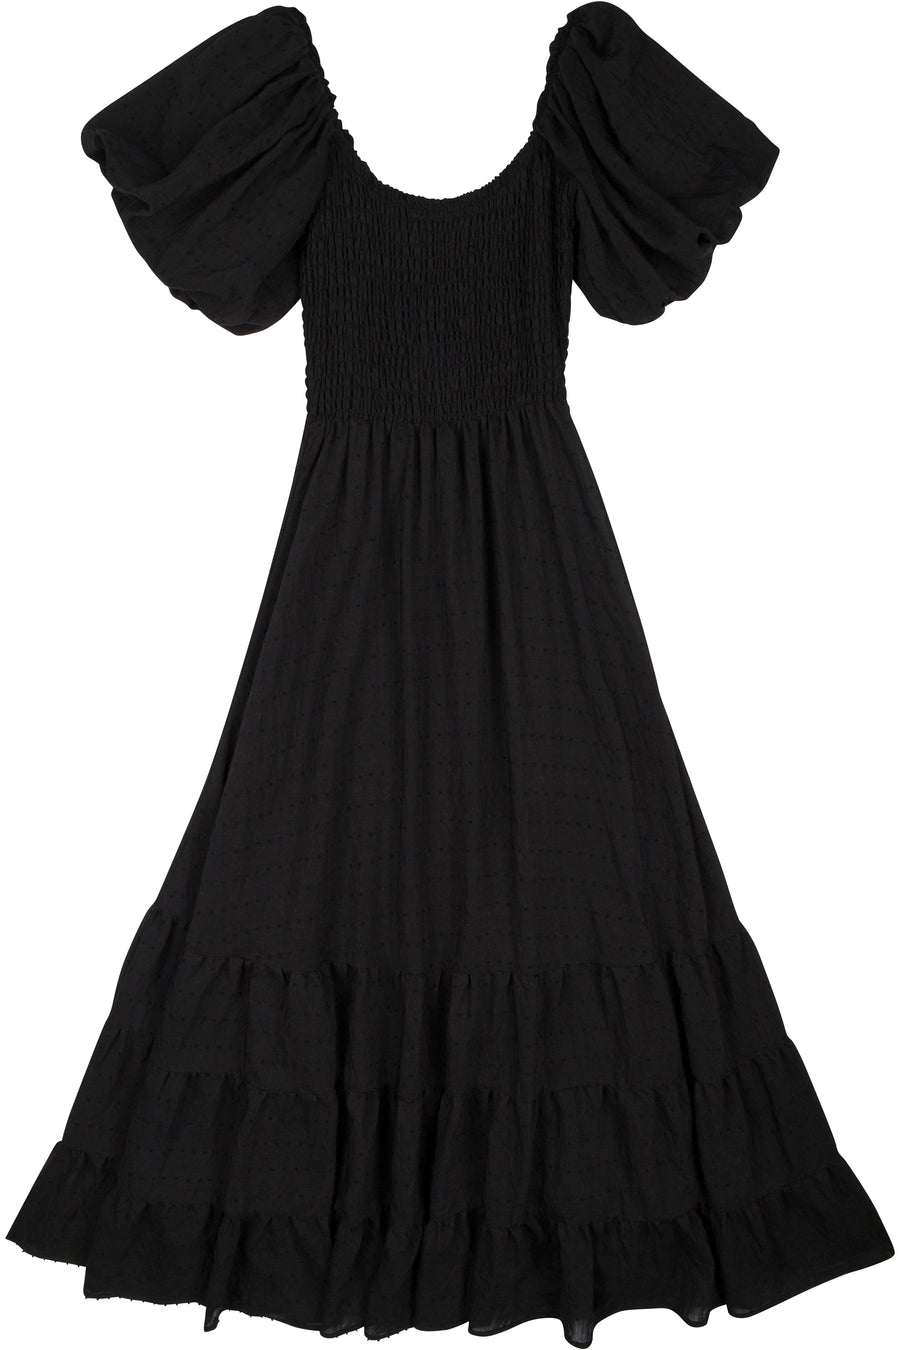 Picnic Maxi Dress Black